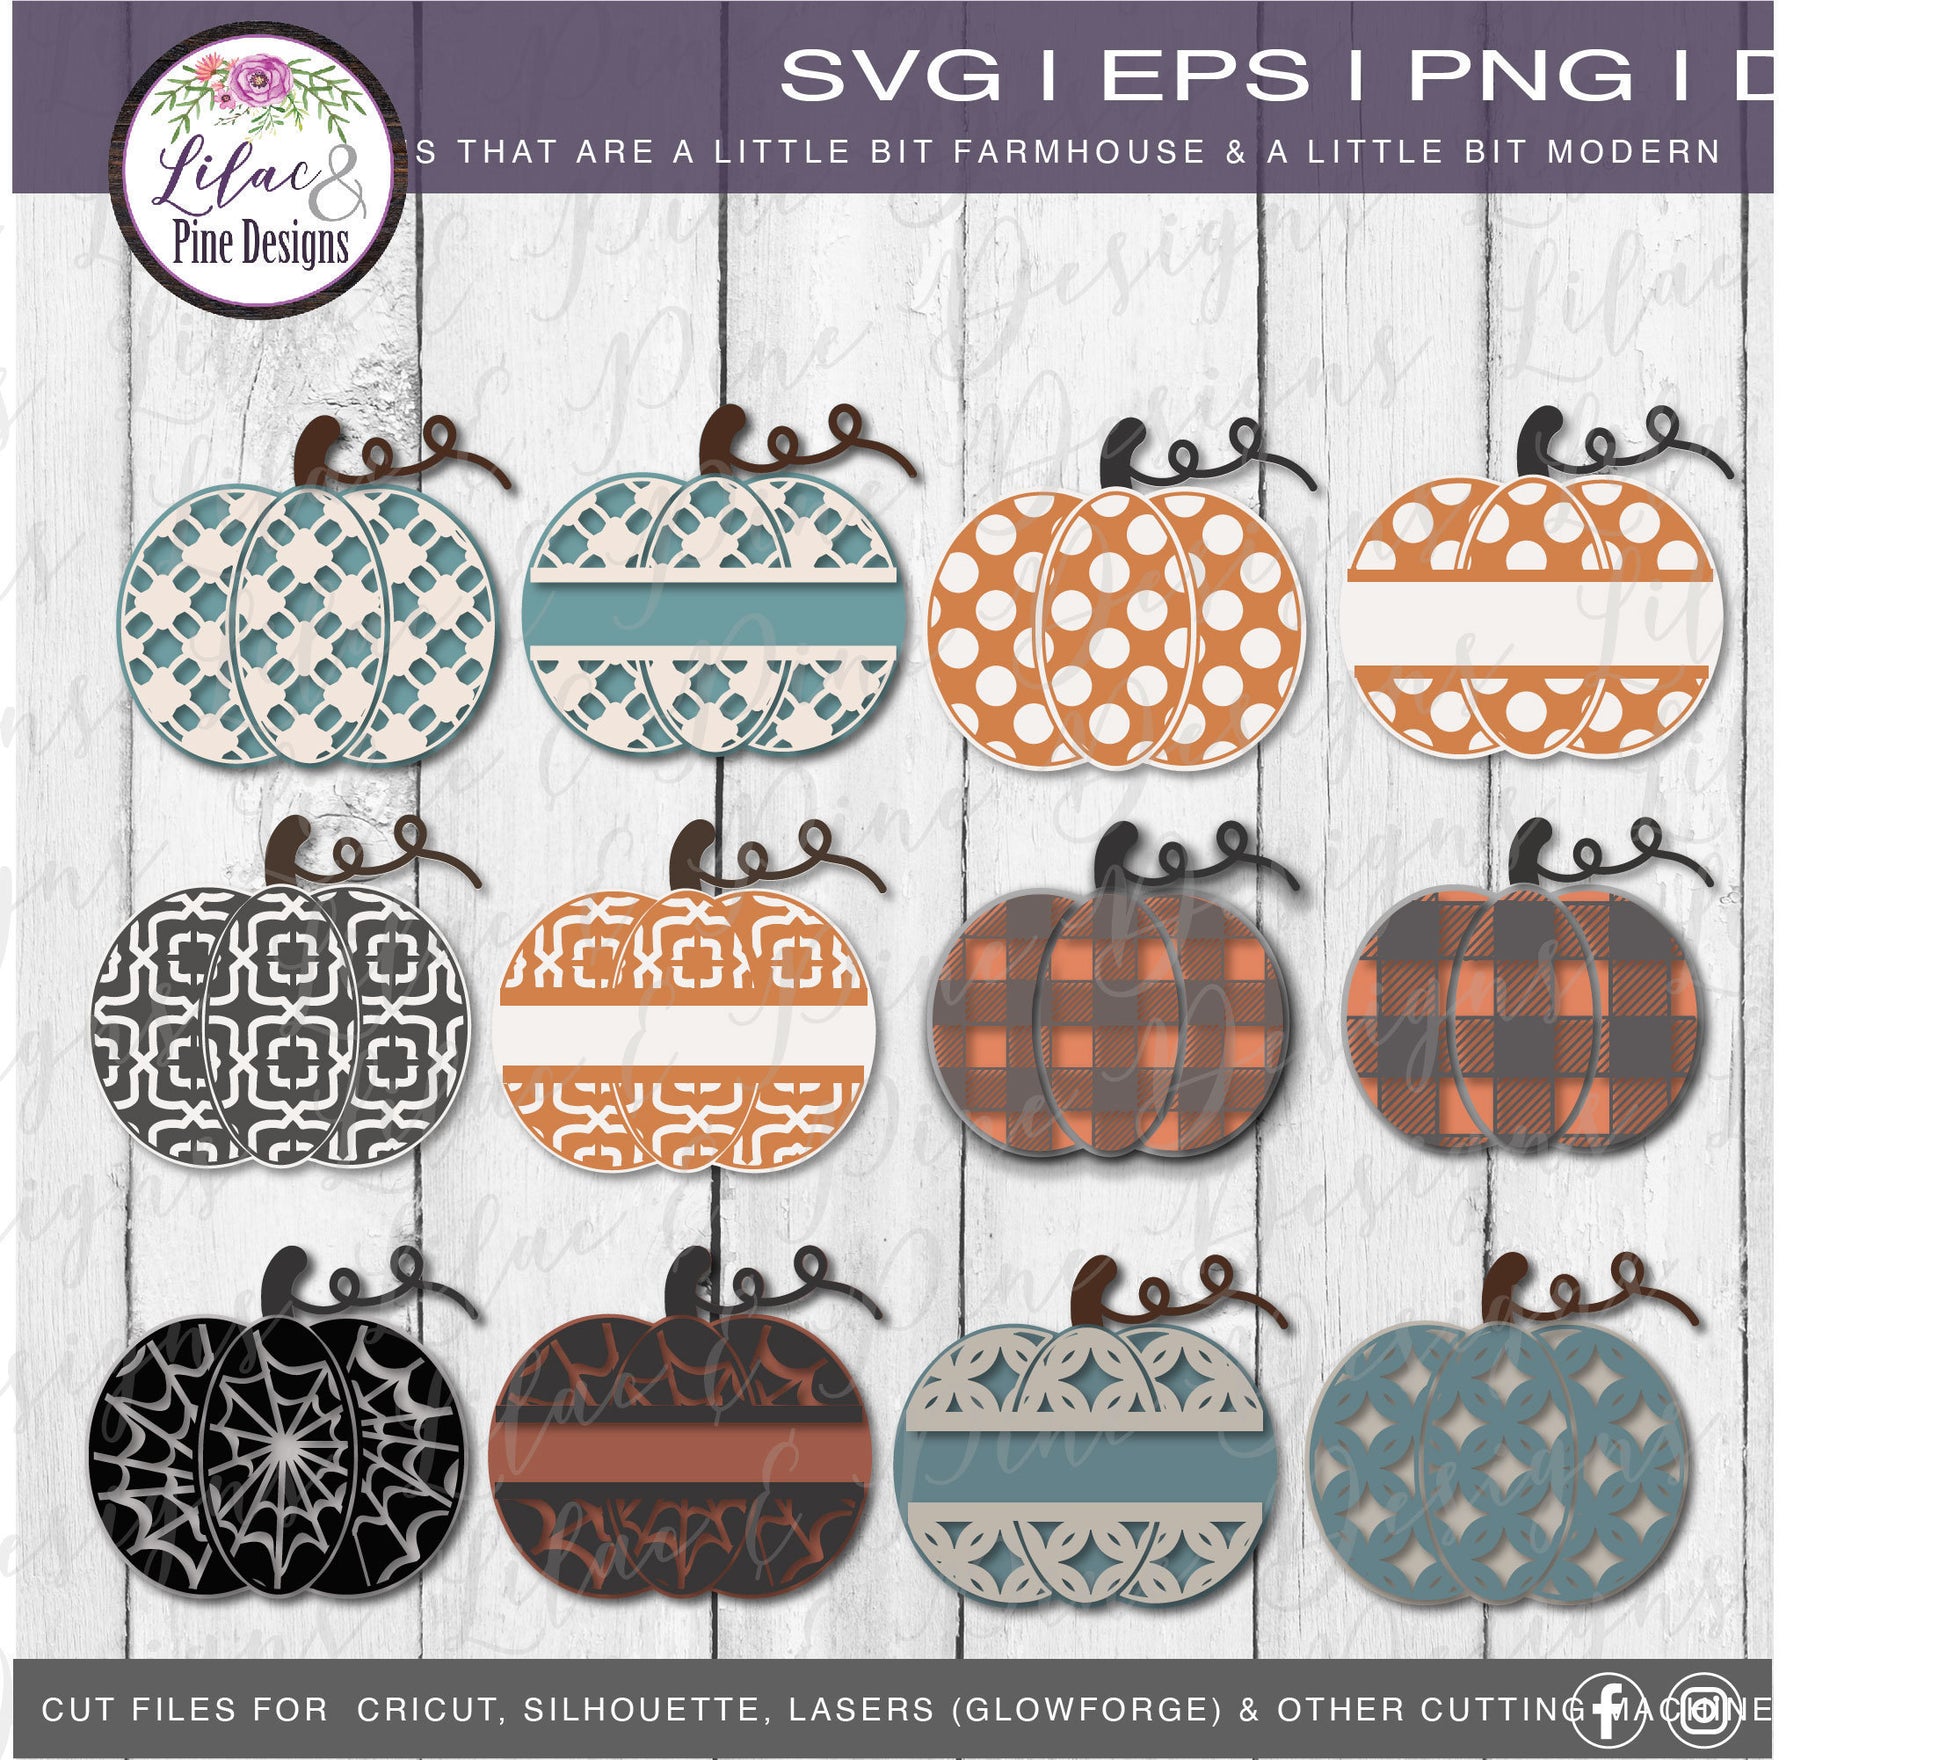 Patterned pumpkin bundle SVG, Pumpkin monogram bundle SVG, Patterned Fall cut files, Pumpkin decor Svg, Tier tray set, Glowforge laser file